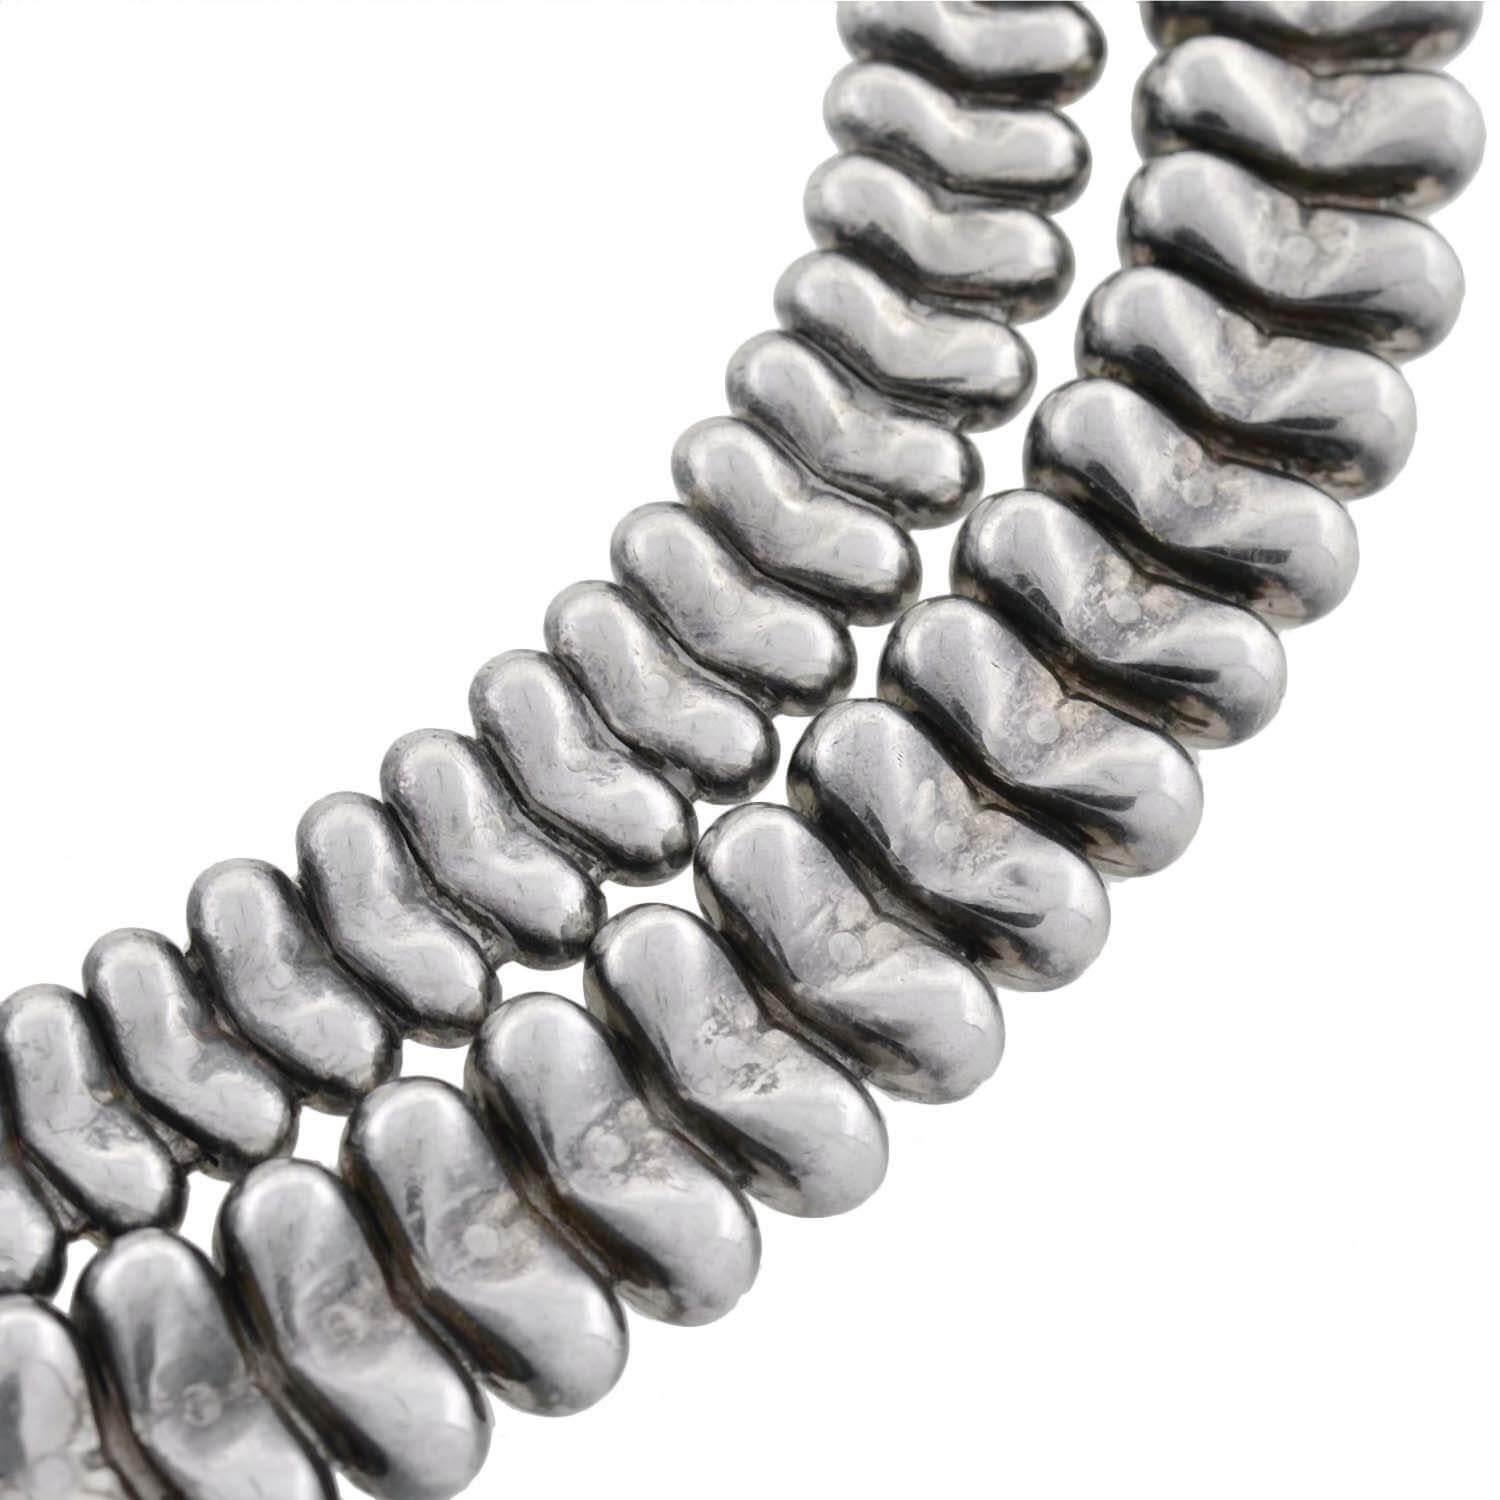 tiffany snake necklace